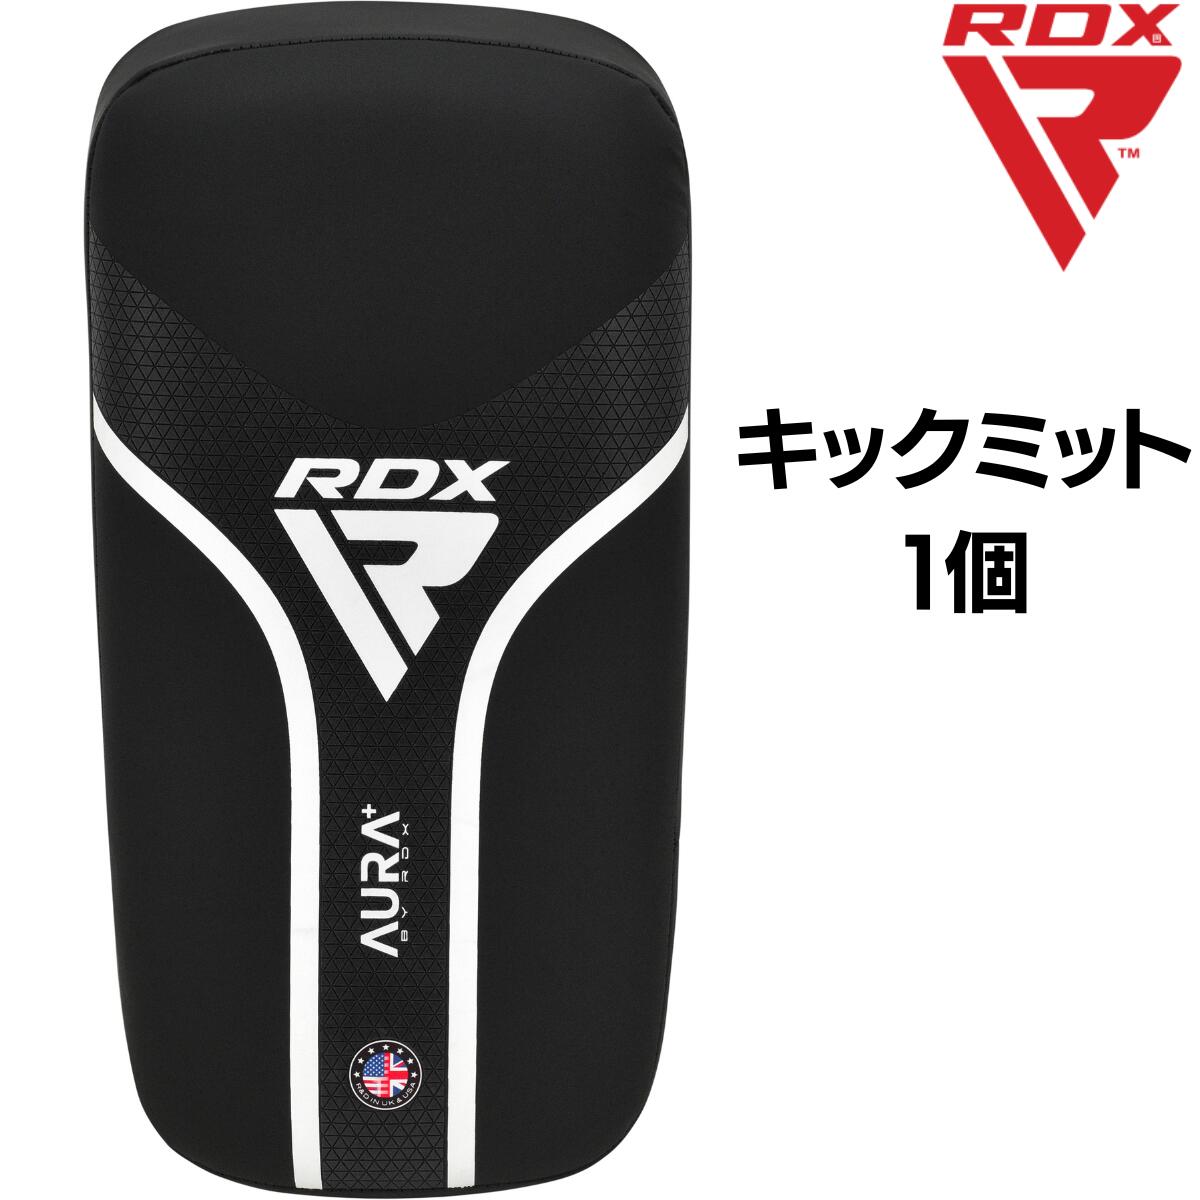 RDX キックミット 1個 AURA+シリーズ キックボクシング 空手 ムエタイ 格闘技 MMA ボクシング ジム トレーニング 耐久性 男性 女性 メンズ レディース 大人 子供 こども キッズ ジュニア ブラ…